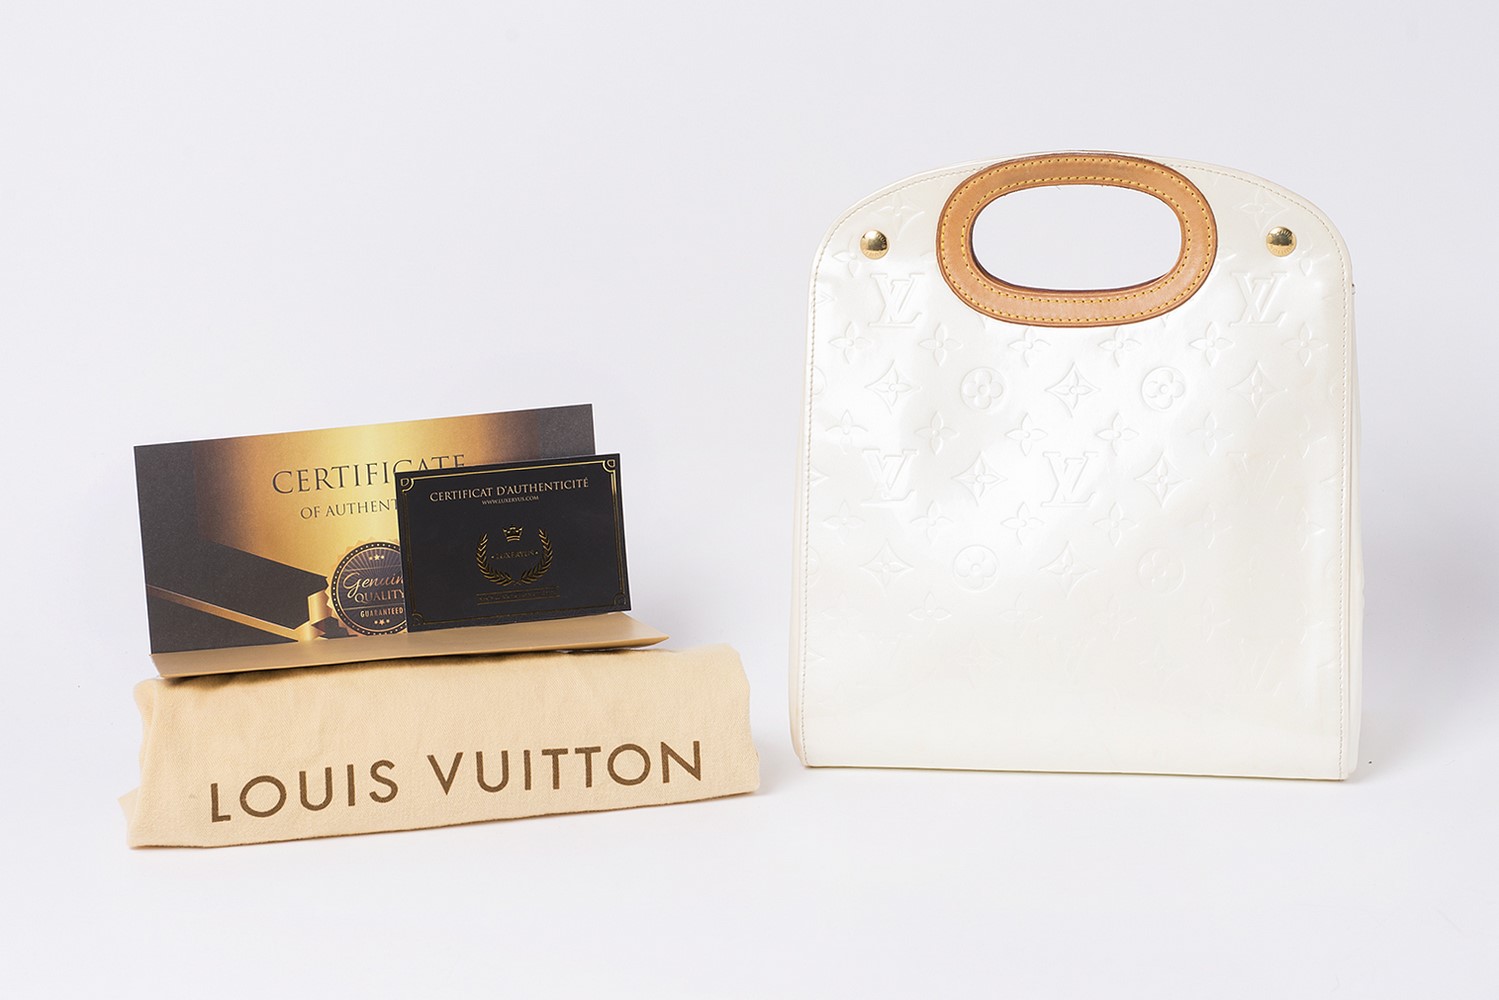 Sac Louis Vuitton Authentique d'occasion en cuir vernis monogram empreint couleur crème